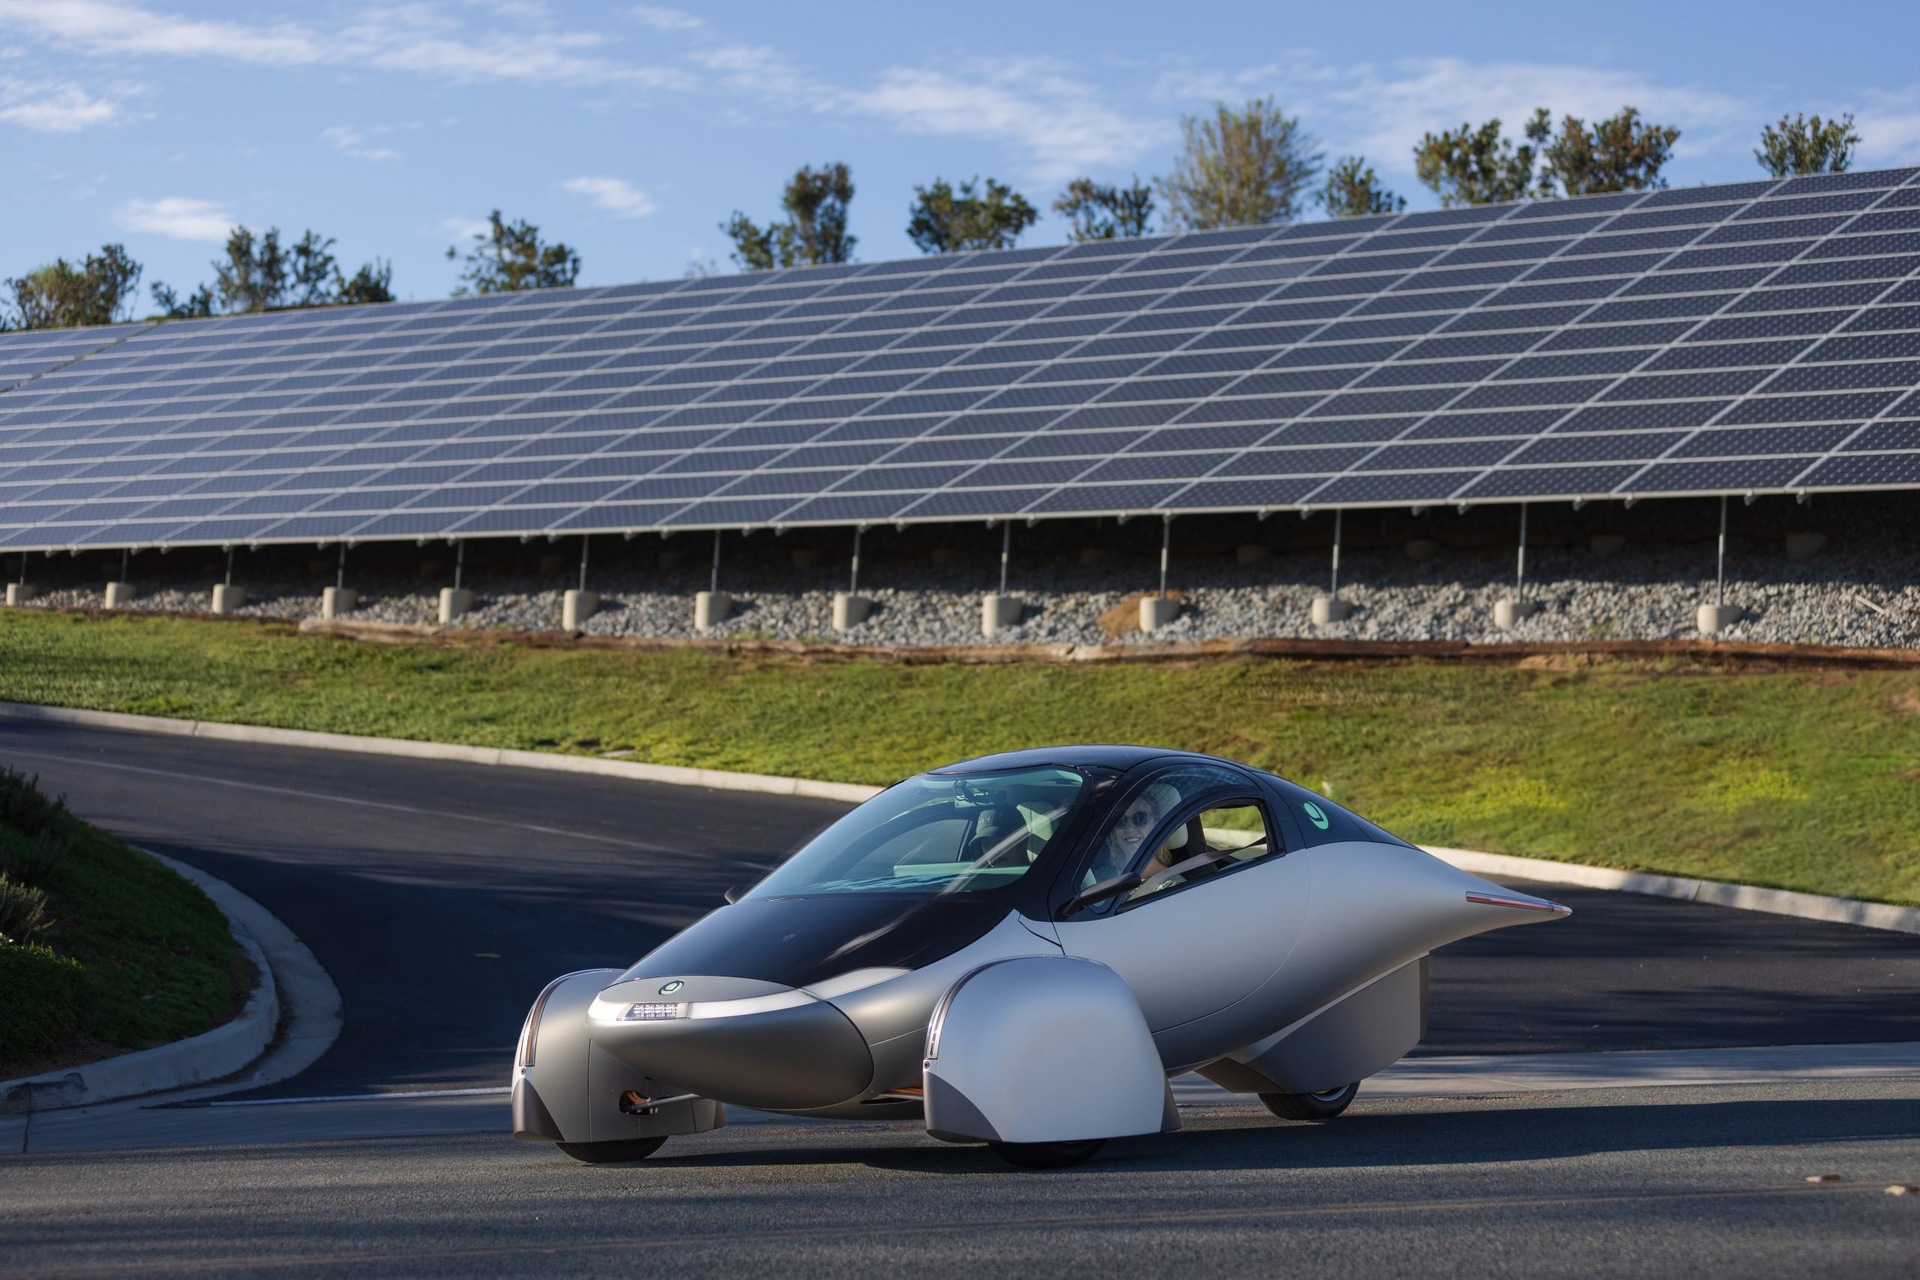 Solární auto: Aptera Delta je nejudržitelnější auto na světě s dojezdem 1600 km na baterie a 70 km na solární energii